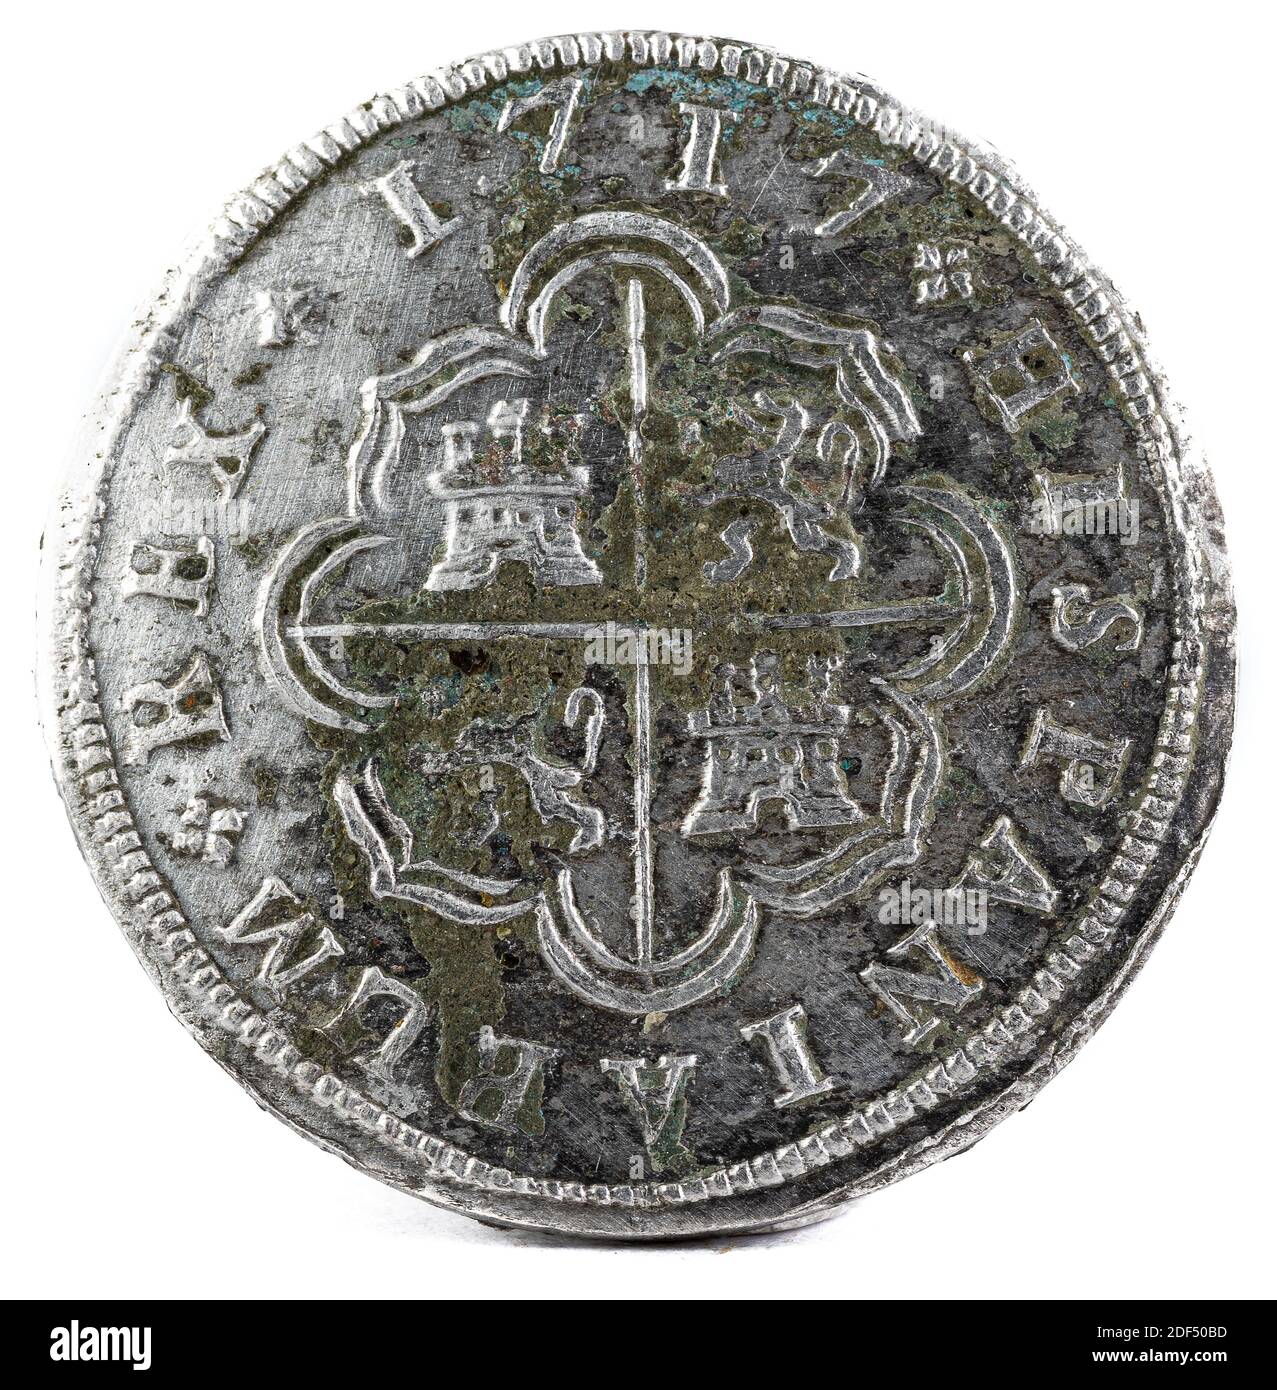 Alte spanische Silbermünze der König Felipe V. 1717. In Madrid geprägt. 2 Reales. Rückwärts. Stockfoto